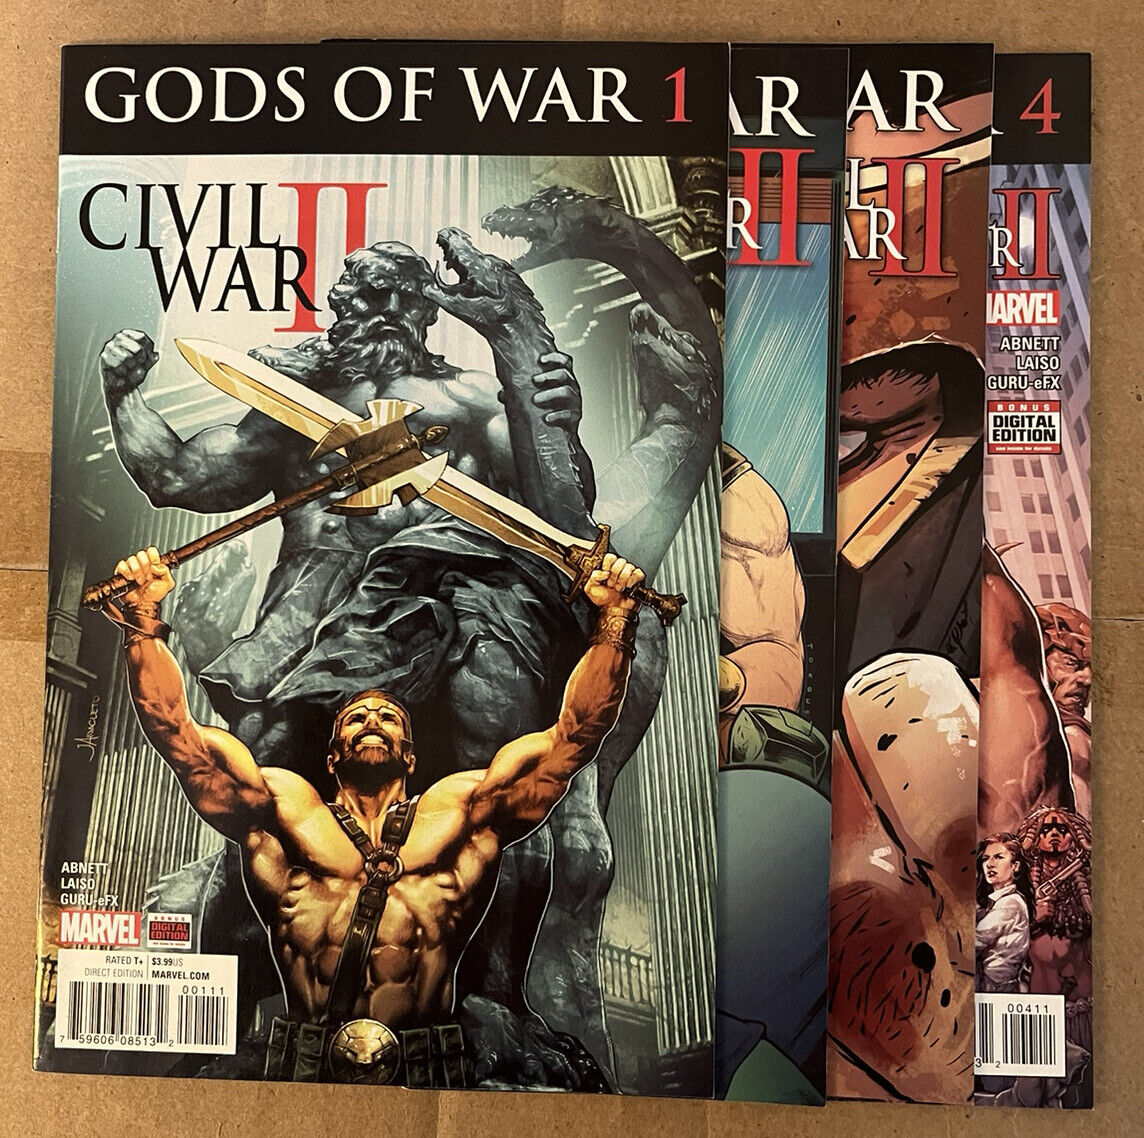 Civil War II Gods of War (Marvel 2016) #1 2 3 4 Complete Story!!  by Dan Abnett